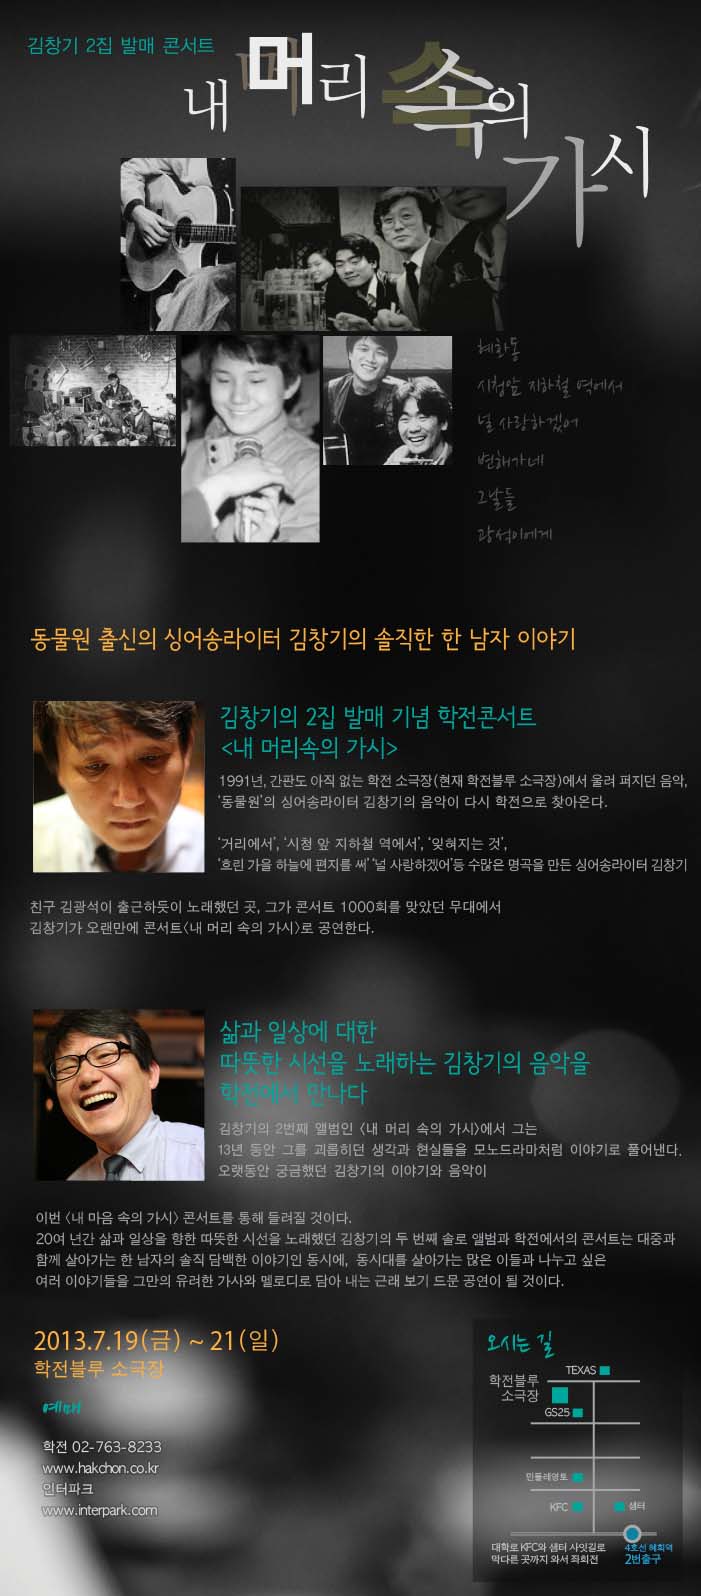 2013년 김창기 2집 발매 콘서트〈내 머리 속의 가시〉 포스터_2_인터파크.jpg